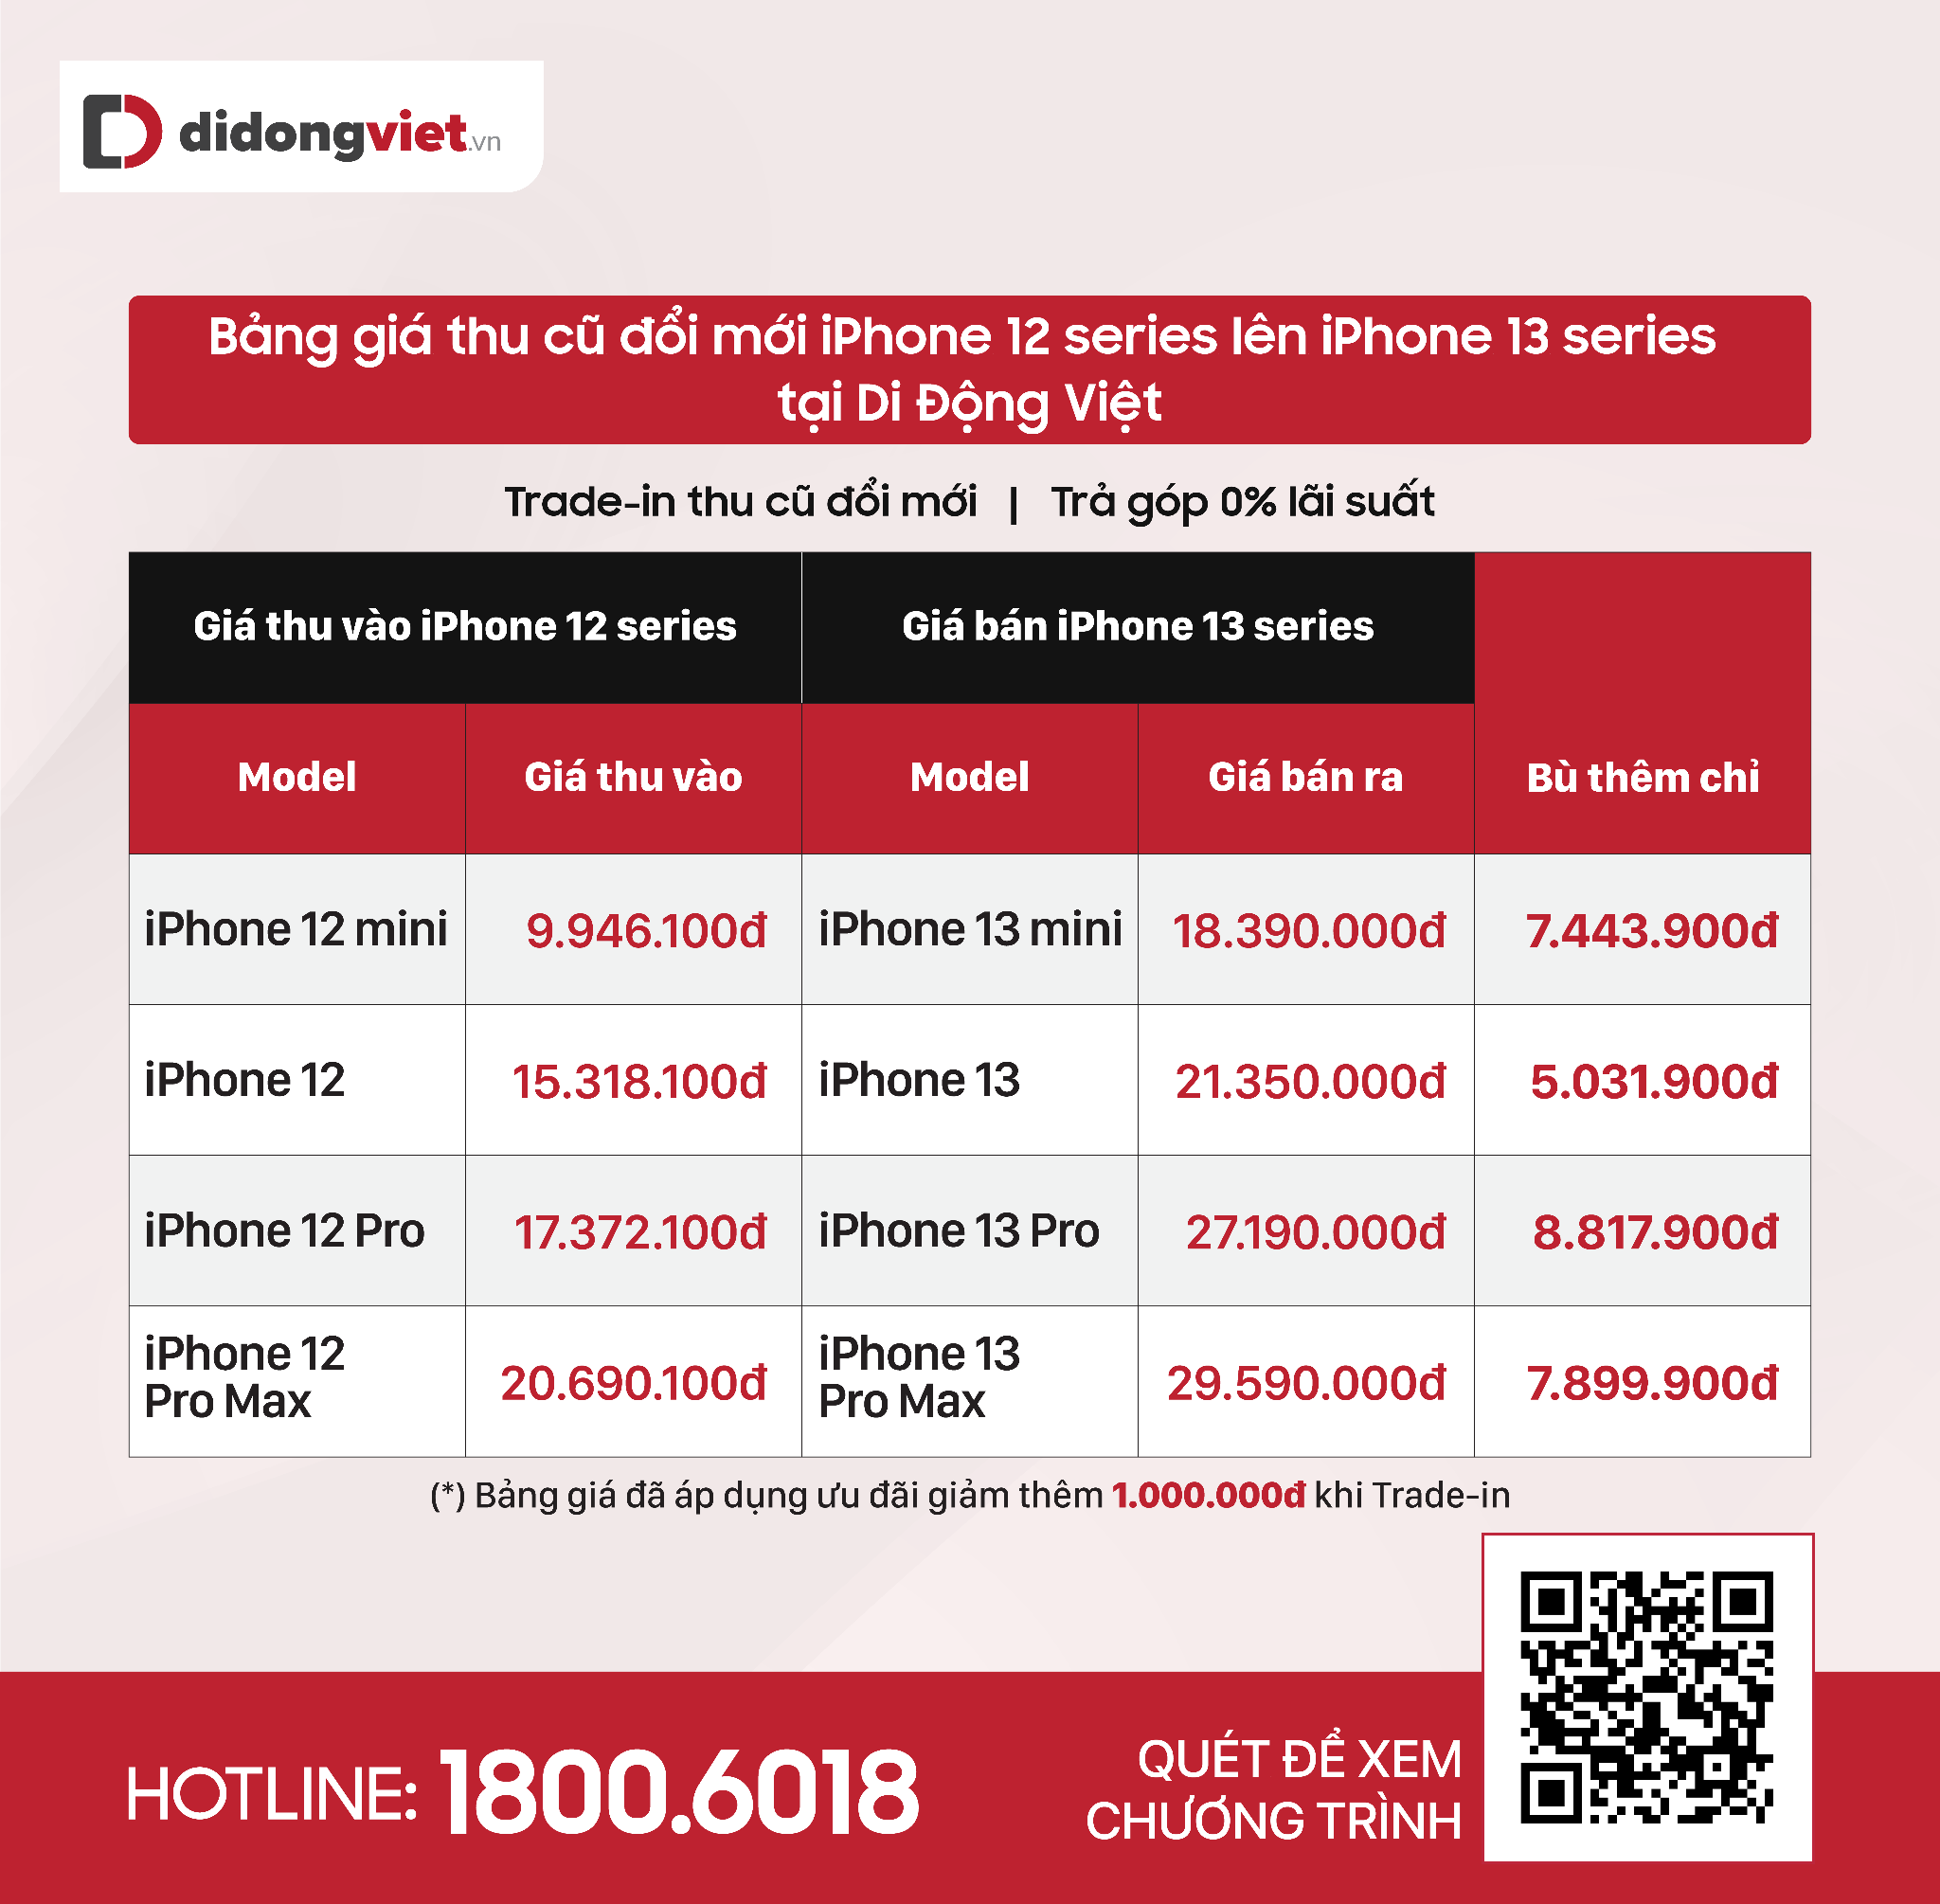 Cập nhật giá bán iPhone 13 series tháng 3: Giảm đến 6 triệu, giá tốt nhất từ trước tới nay